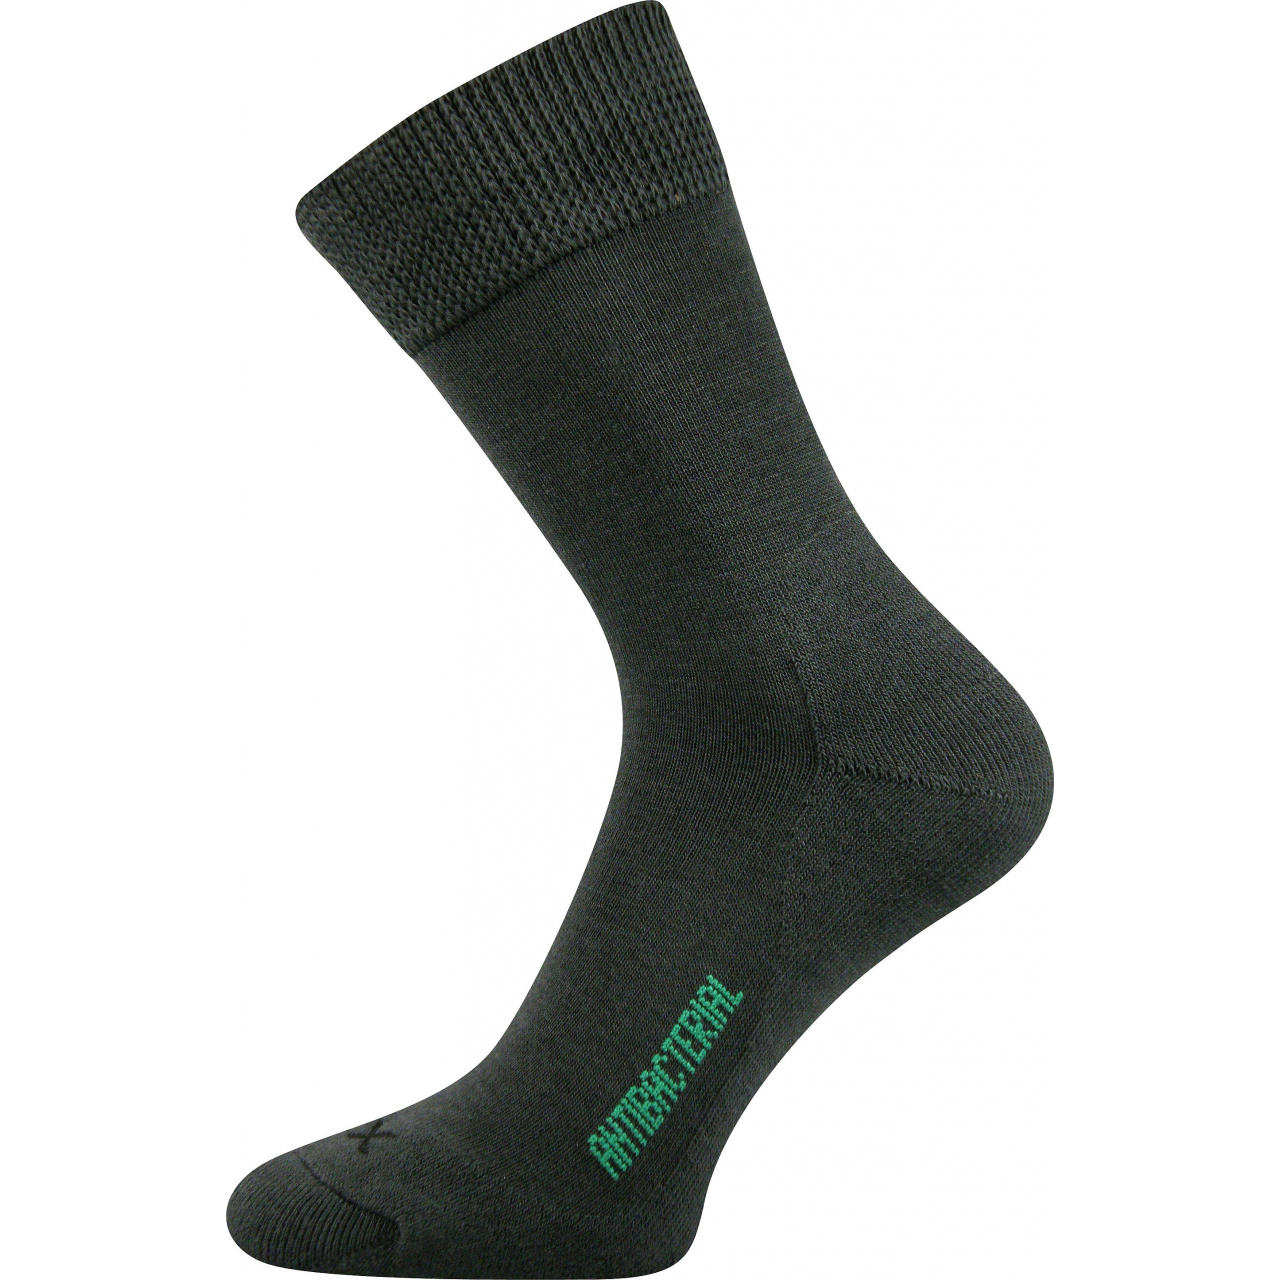 Ponožky zdravotní Voxx Zeus - tmavě šedé, 35-38